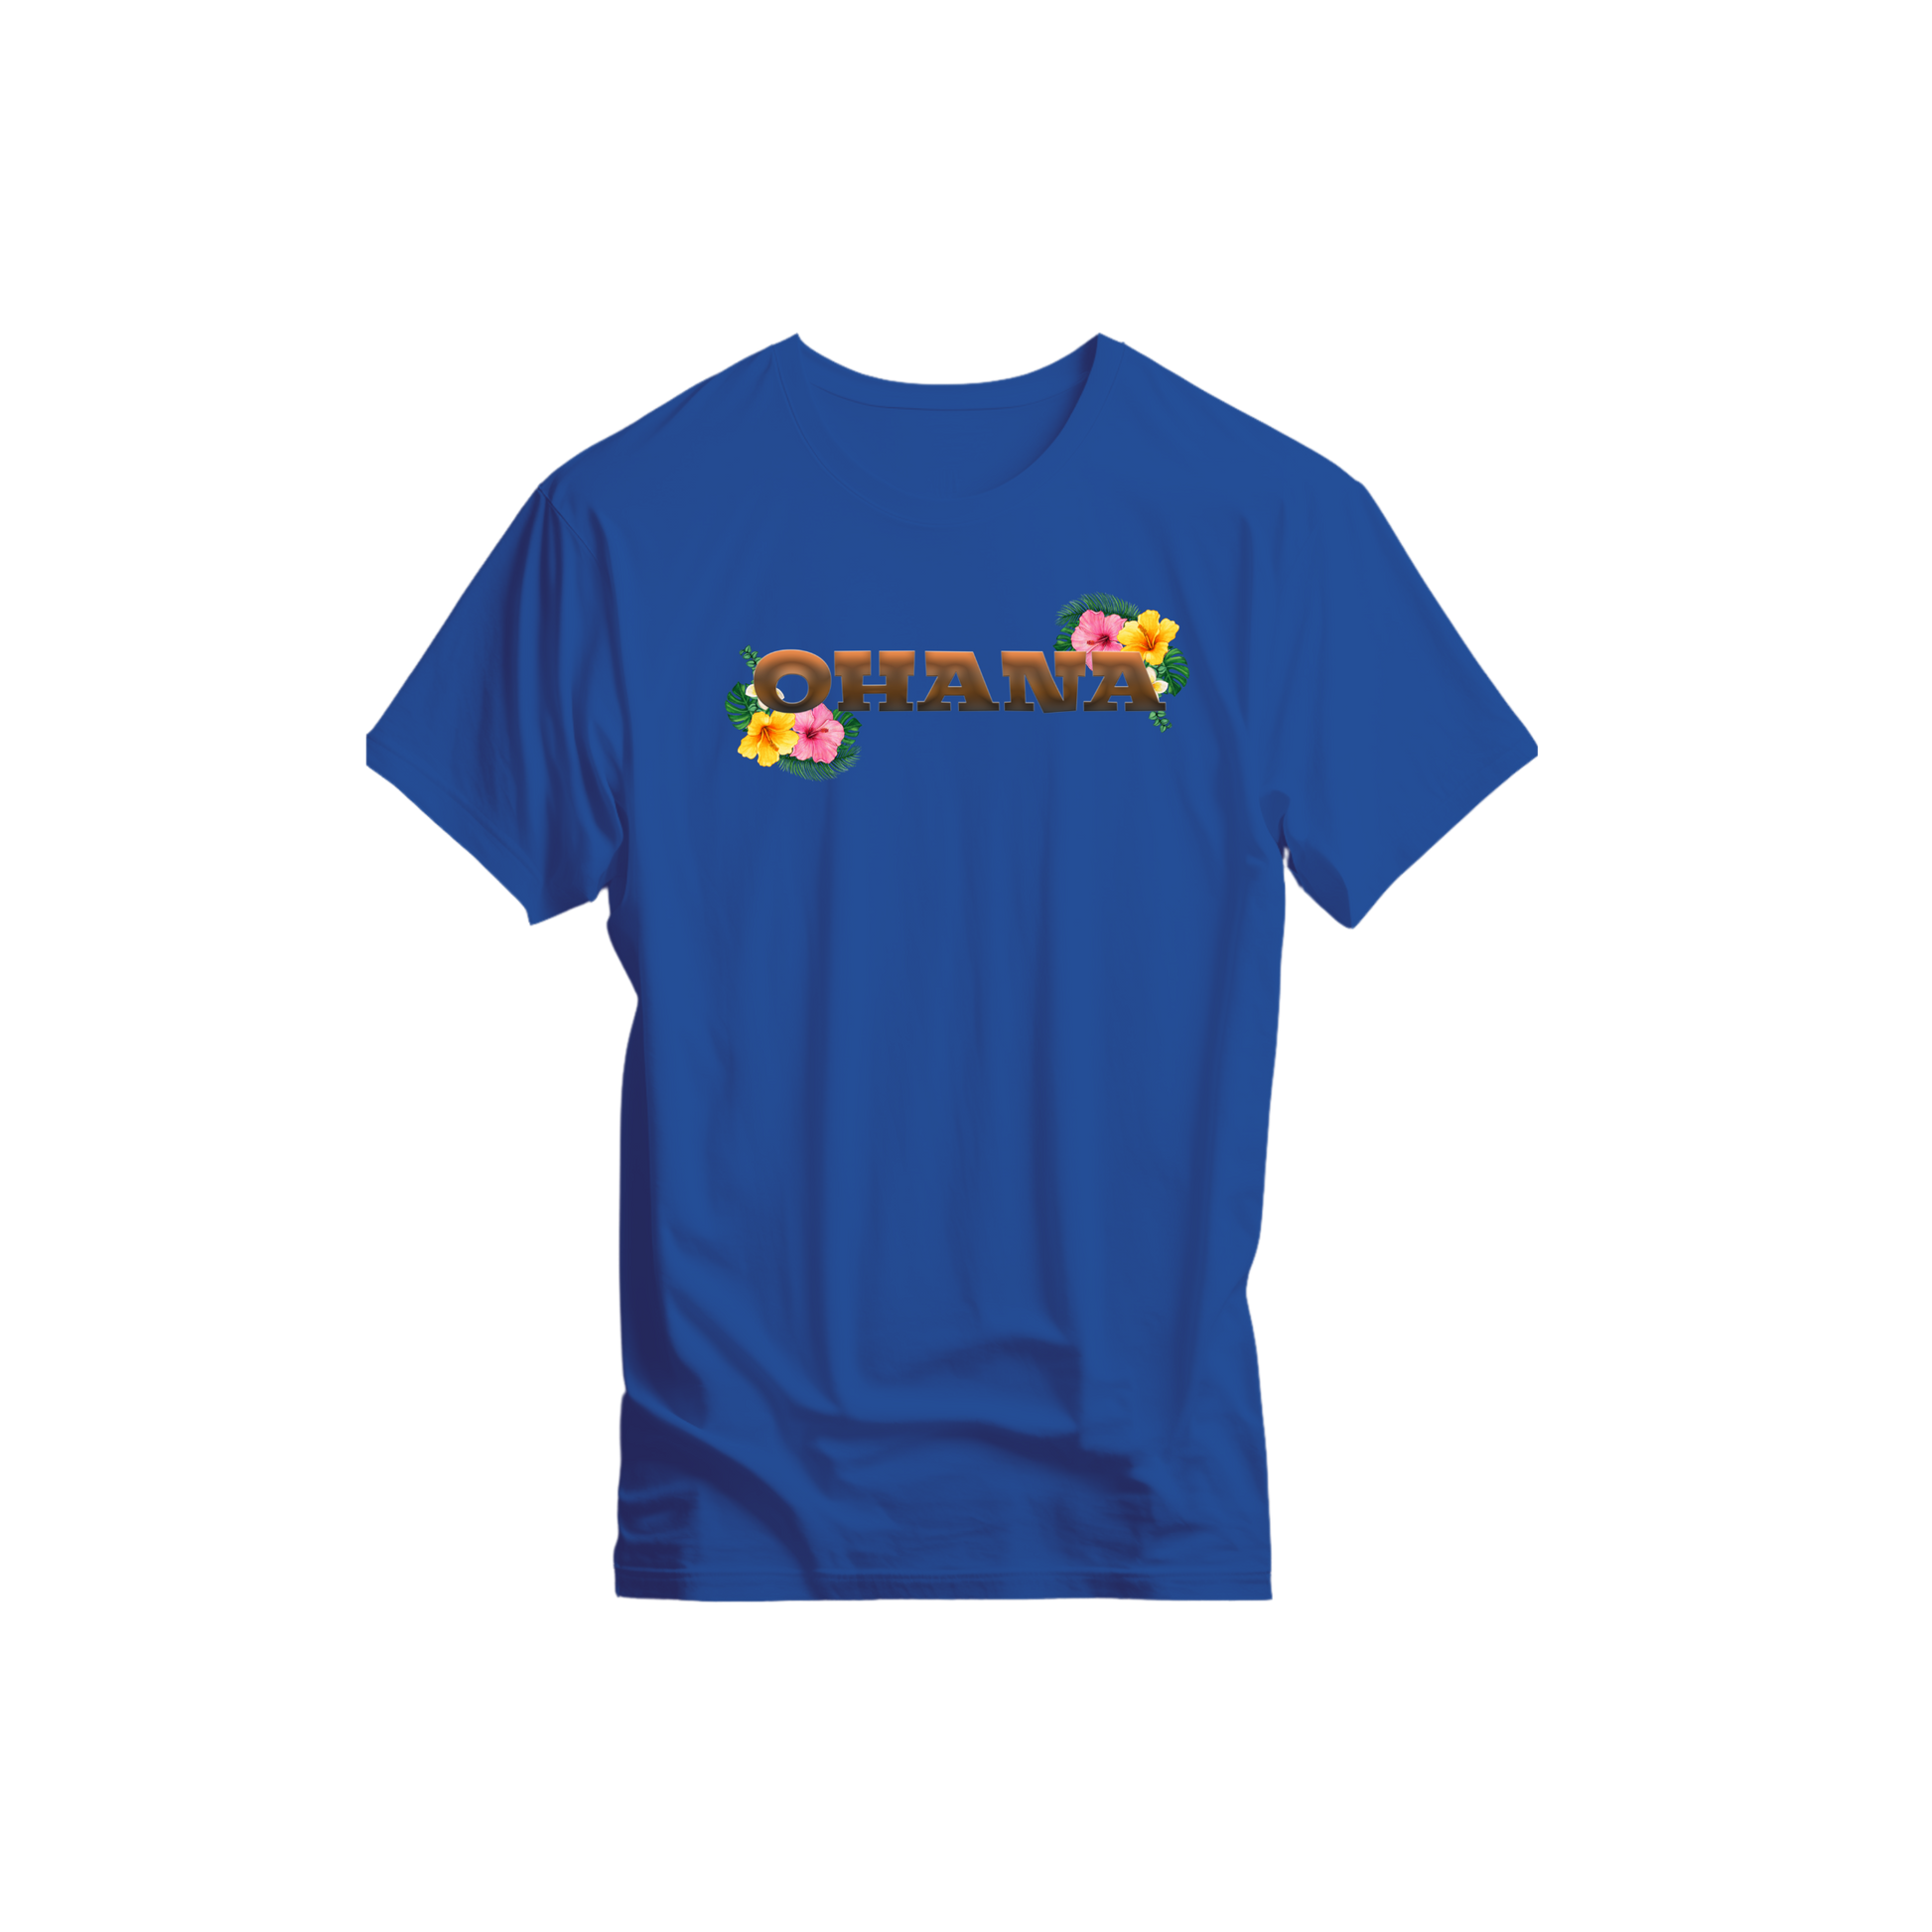 Ohana T-shirt - Tortuna